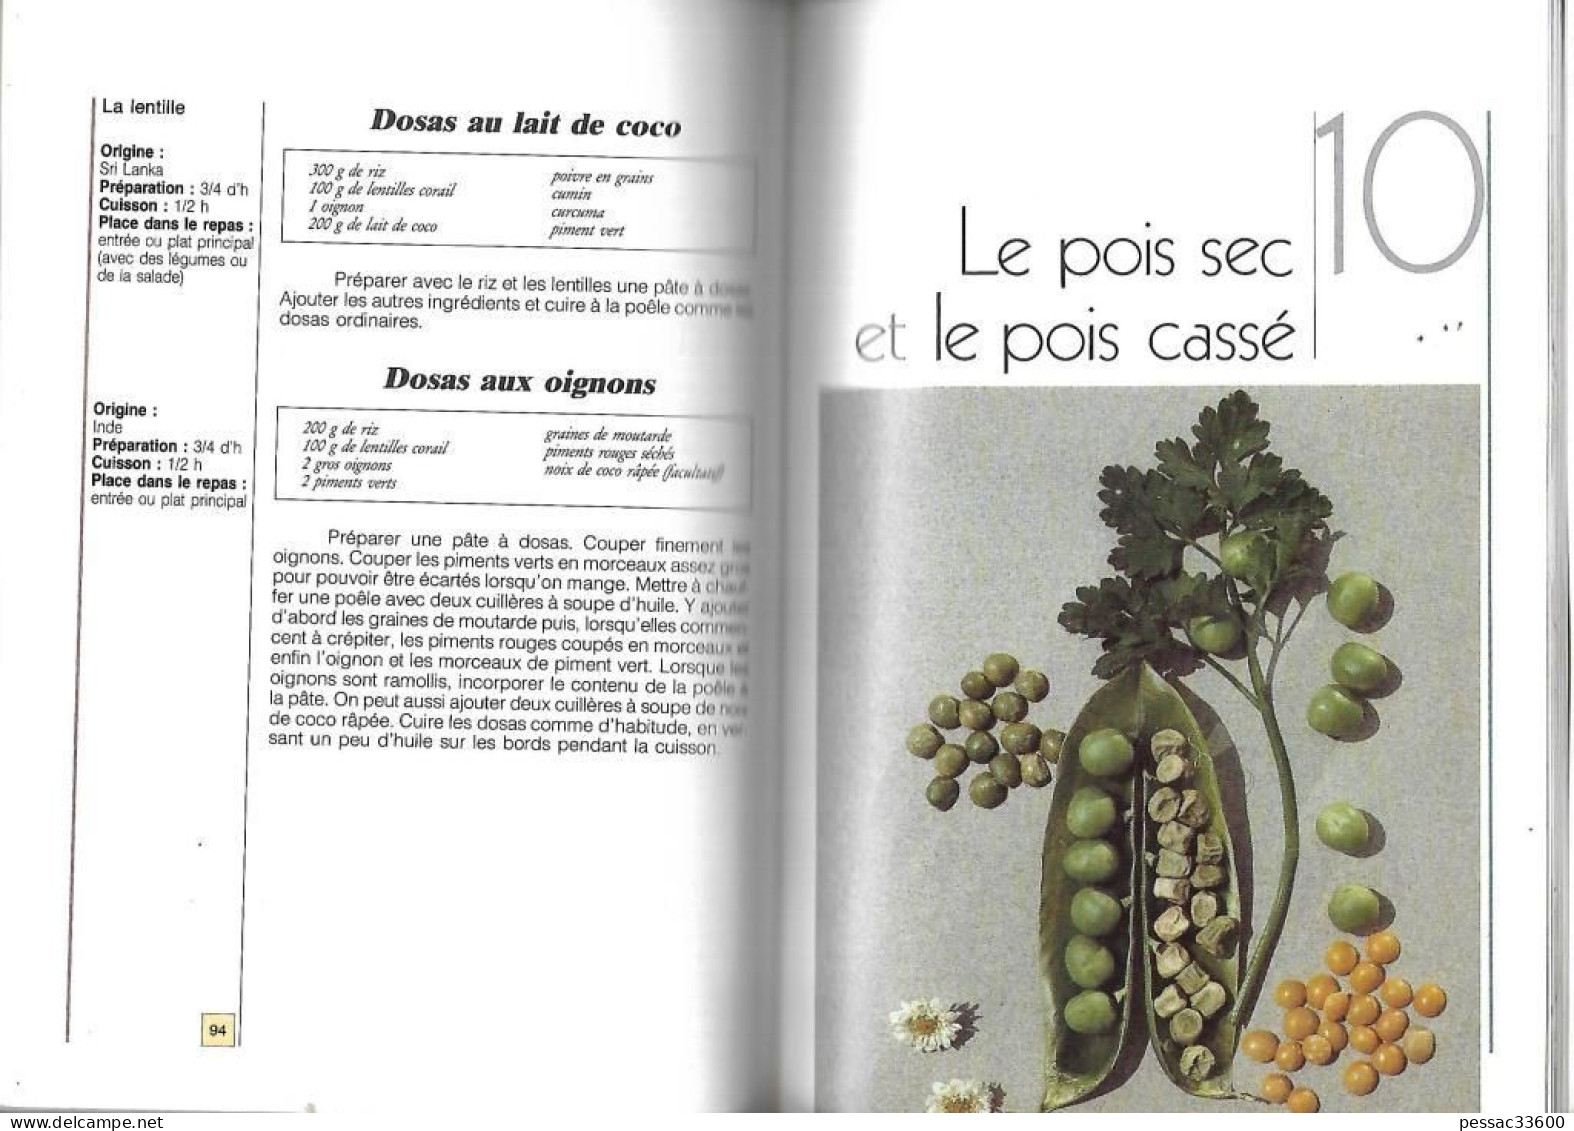 Fabuleuses Légumineuses  Claude Auberty BR BE  édition Terre Vivante 1992  « Avec 140 Recettes Traditionnelles - Gastronomia